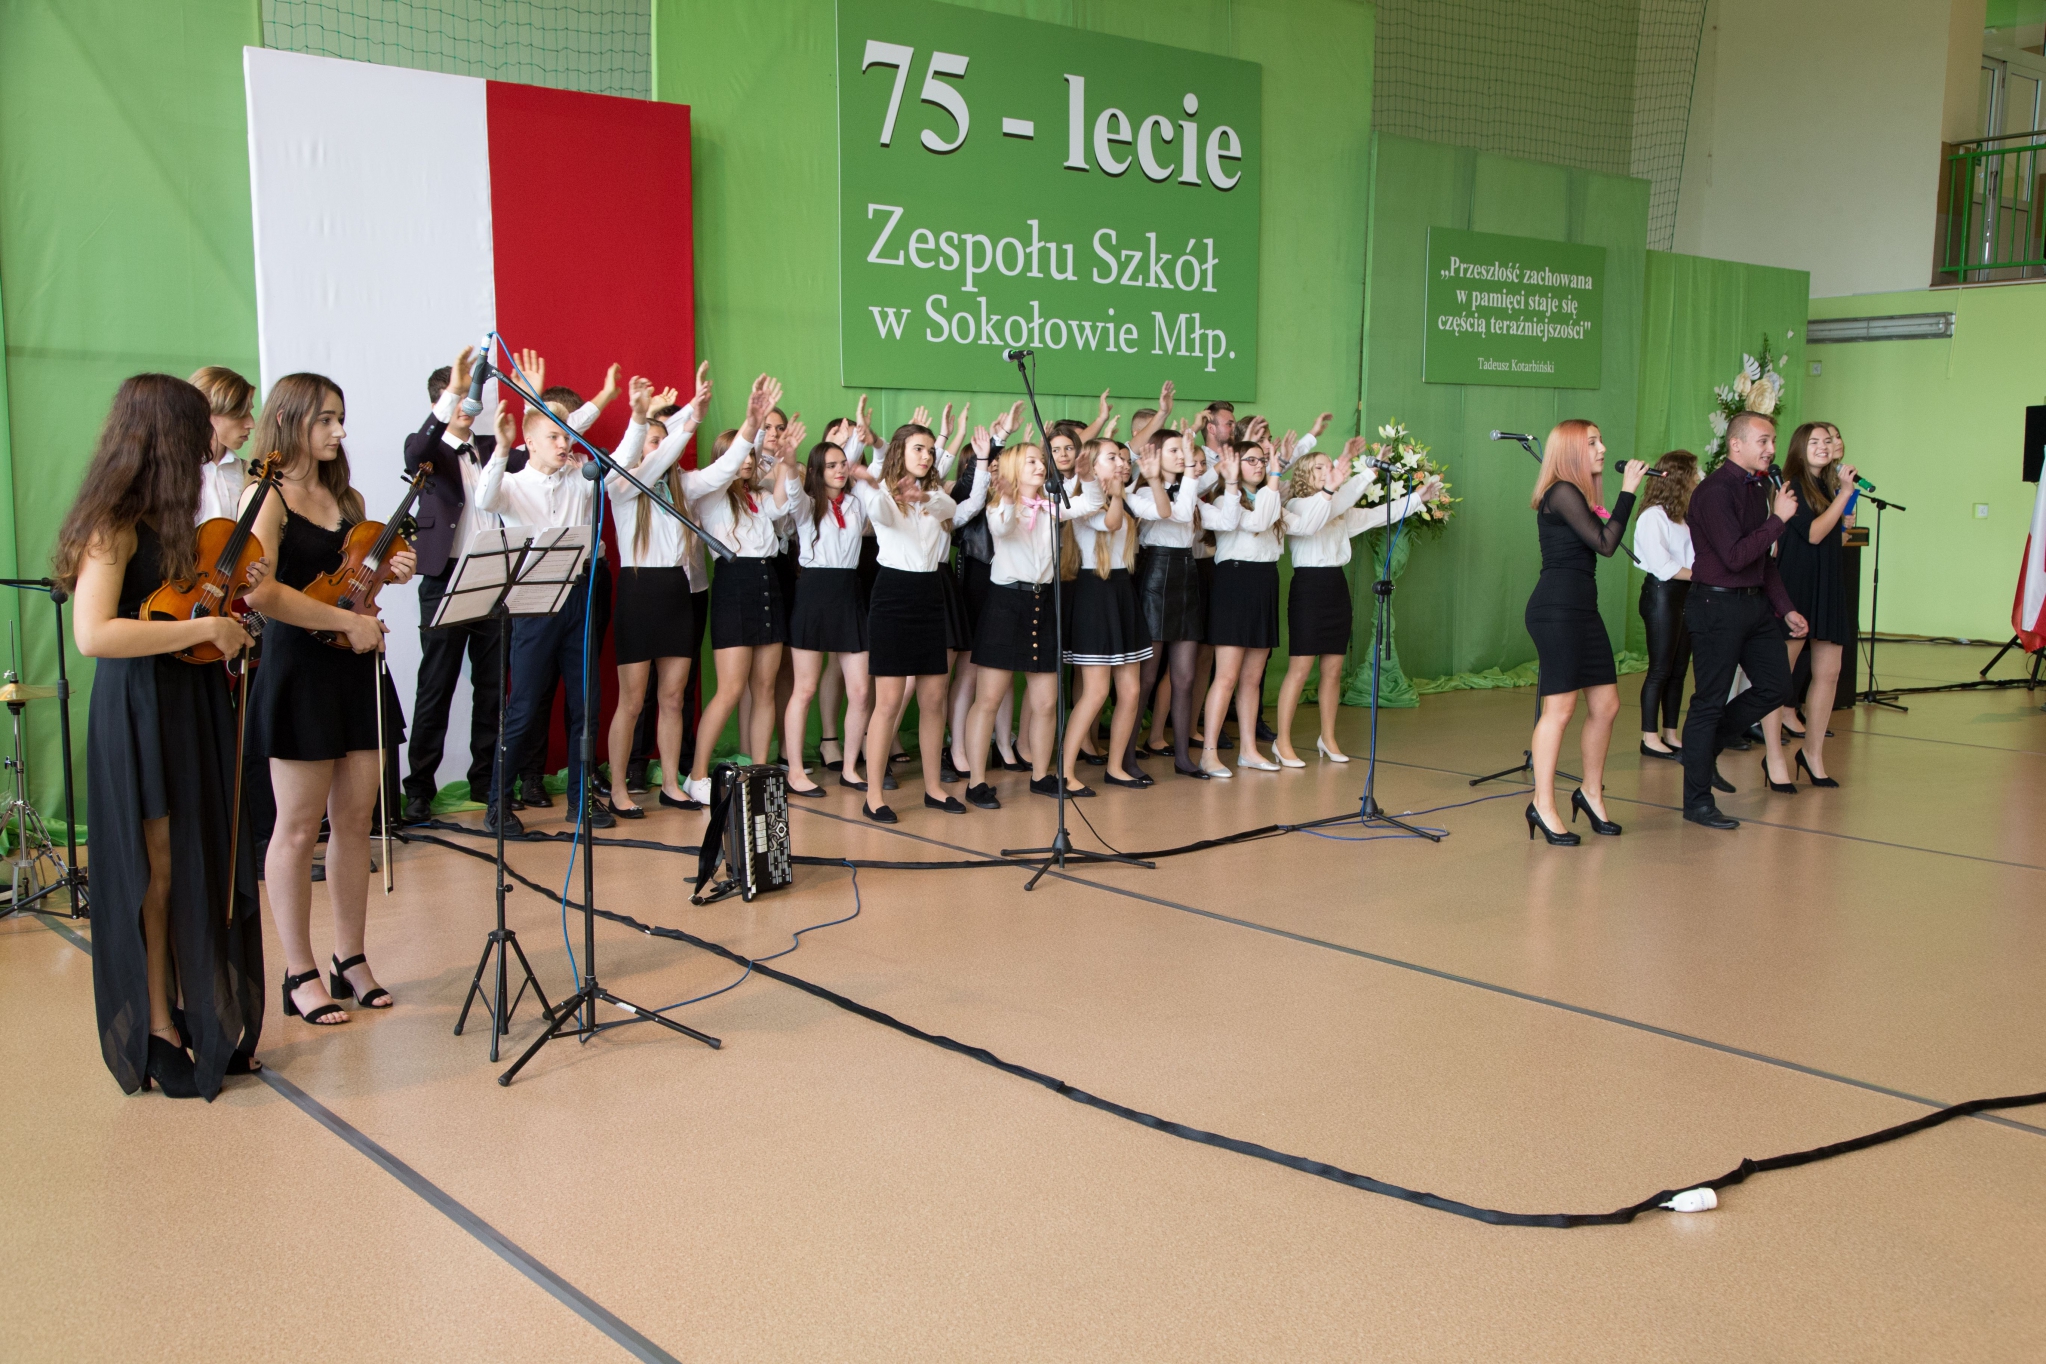 Jubileusz 75-lecia Zespołu Szkół w Sokołowie Małopolskim